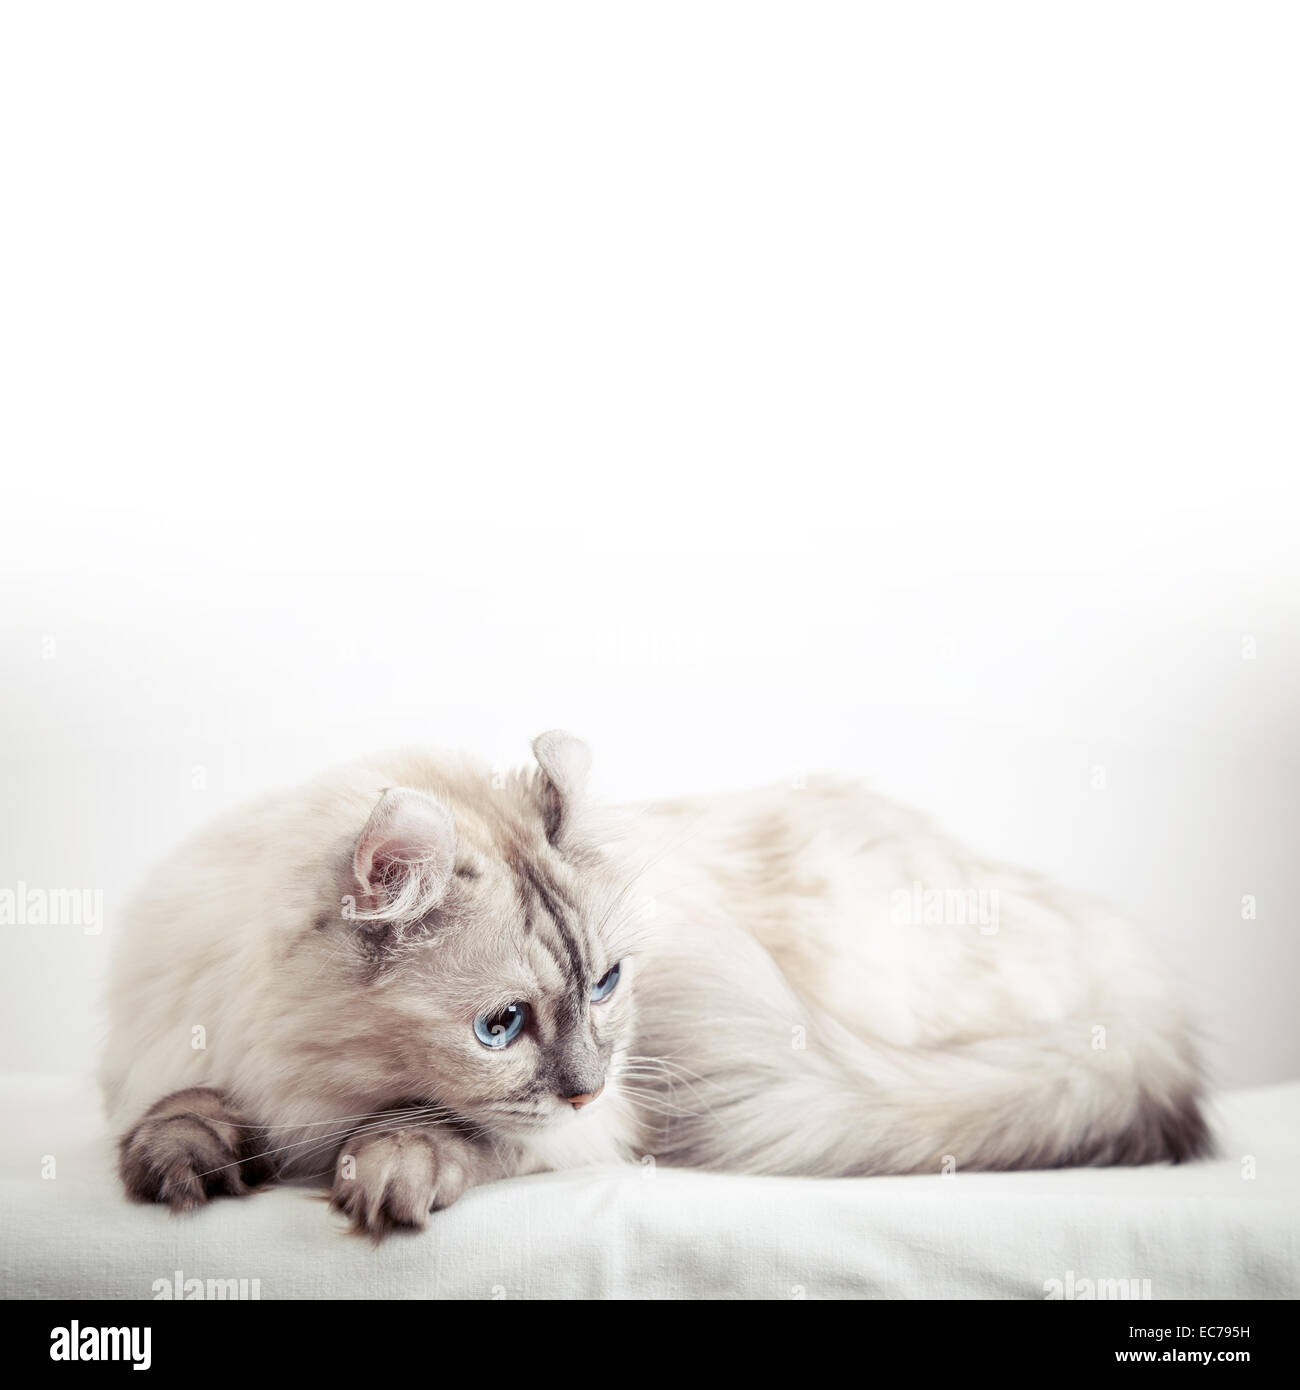 Rizo americano blanco gato con pelaje color puntiagudo. Close-up studio photo Foto de stock